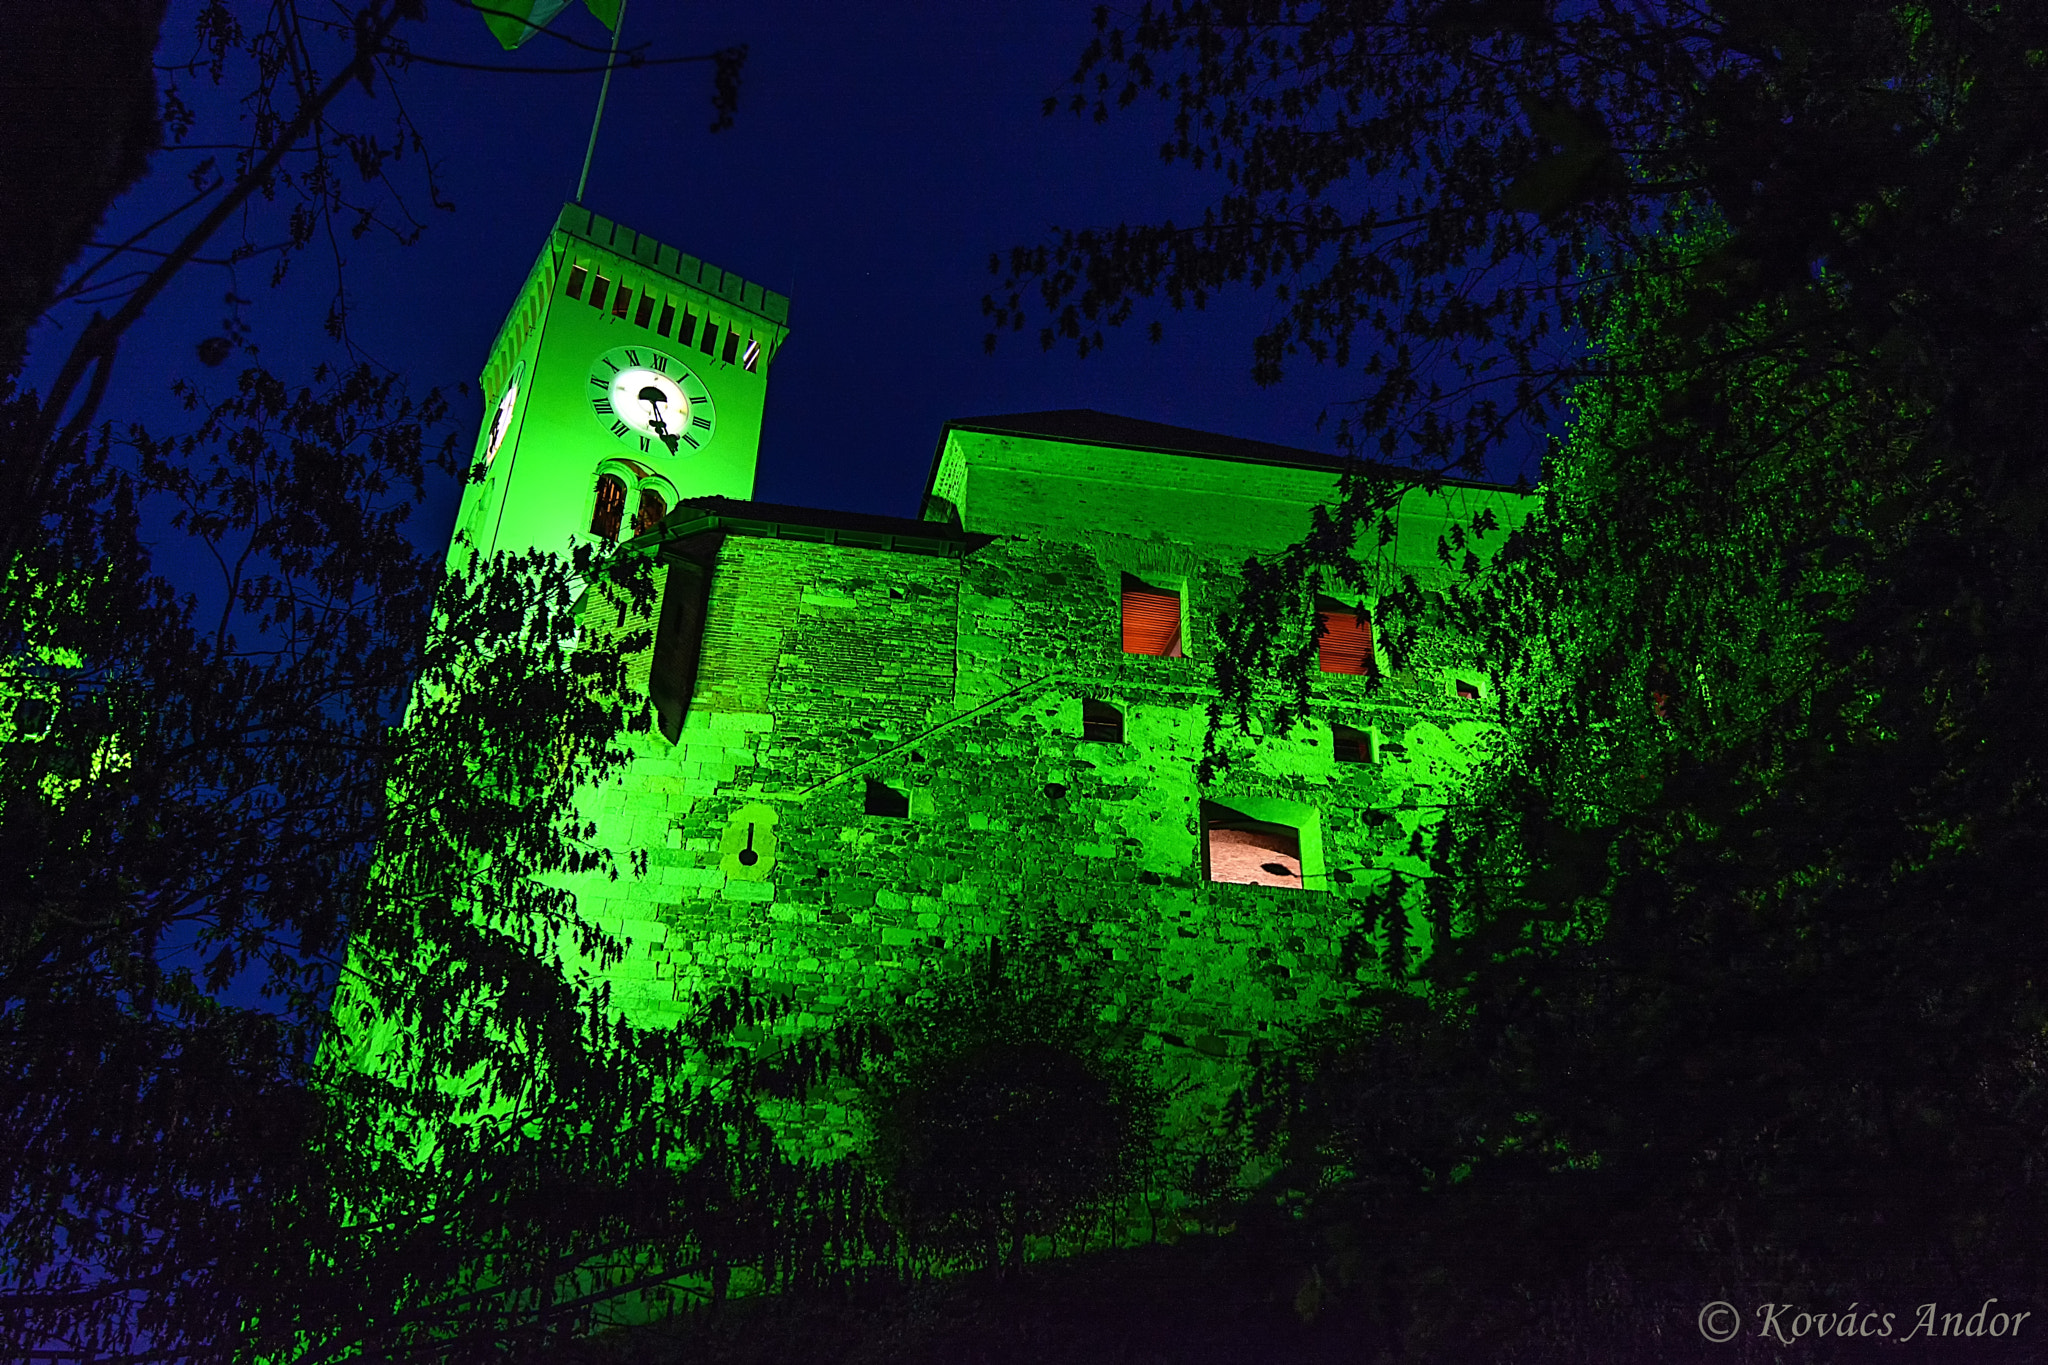 Nikon D7100 + Nikon AF-S Nikkor 16-35mm F4G ED VR sample photo. Castle of ljubljana by night photography